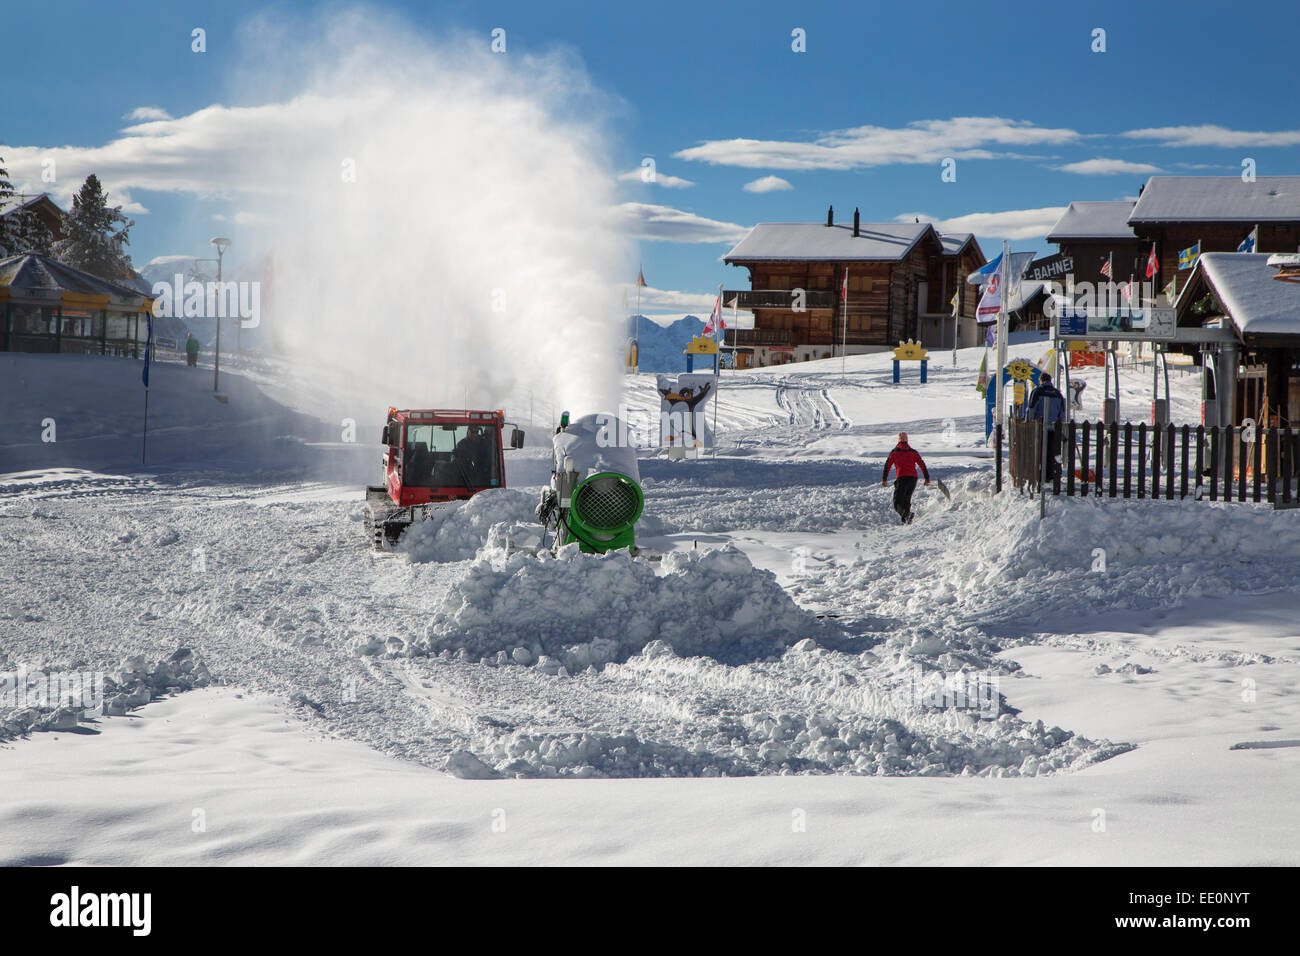 Neve cannoni / snowgun e neve groomer preparazione del veicolo sulla pista da sci in inverno a Riederalp, Wallis / Valais, Svizzera Foto Stock